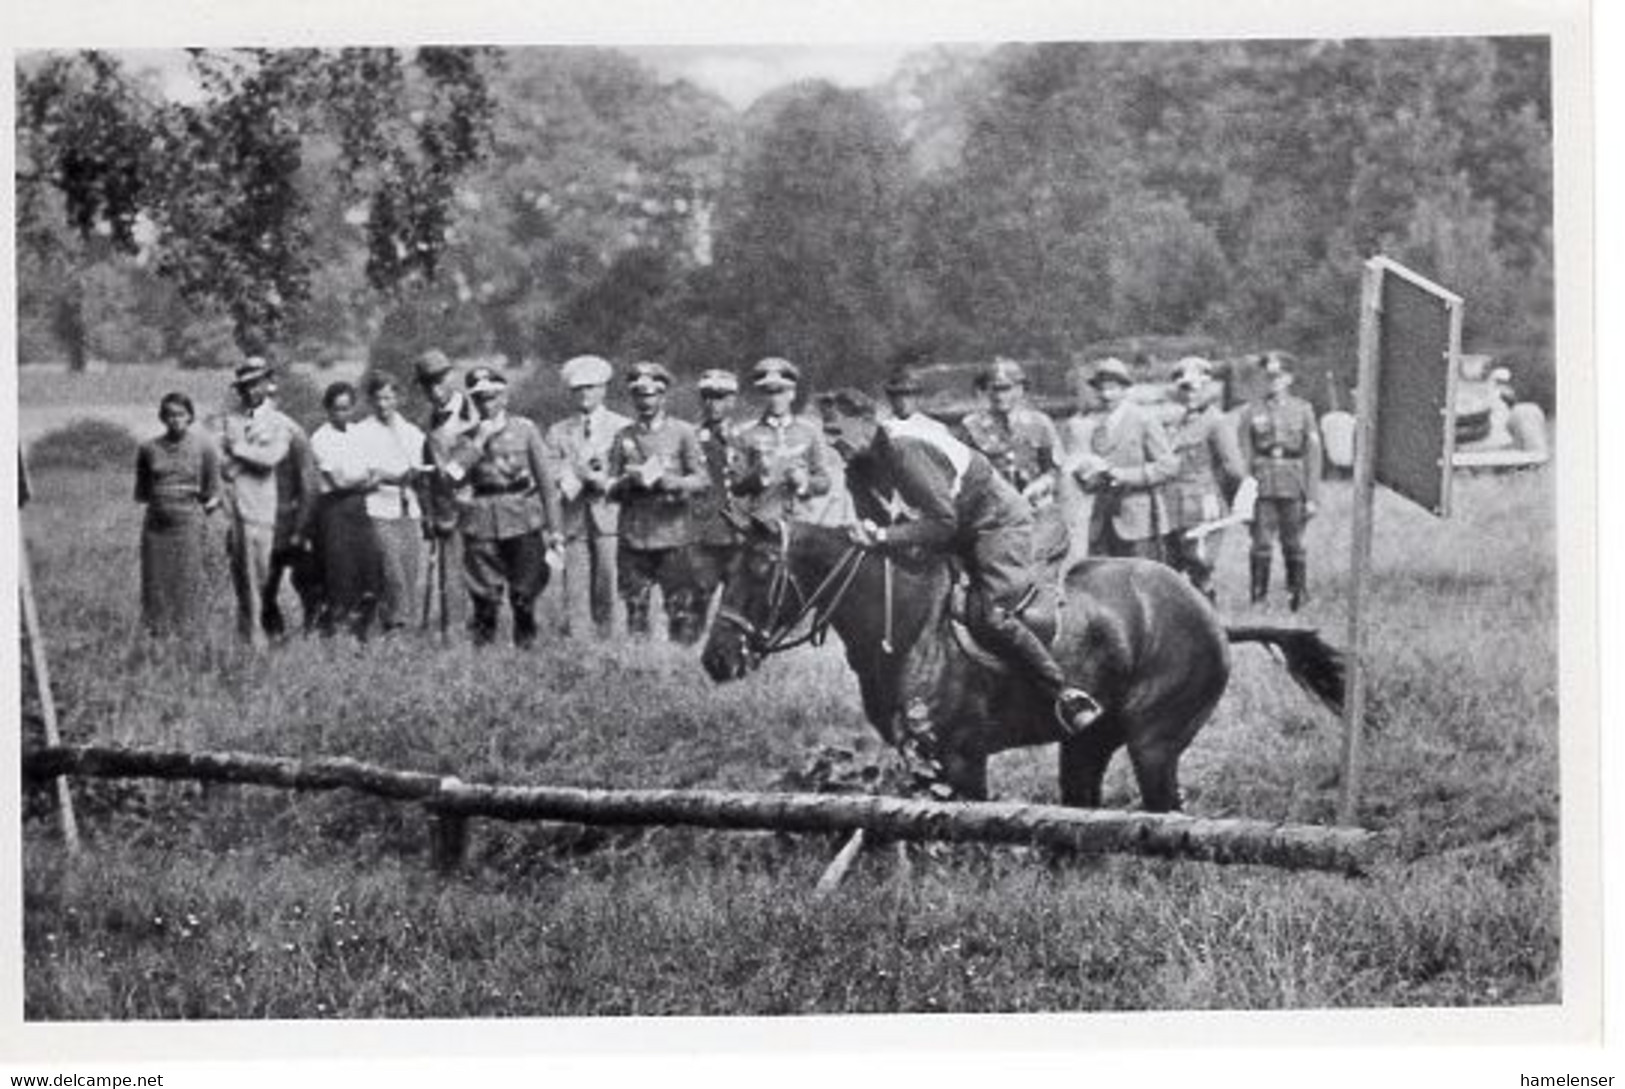 51749 - Deutsches Reich - 1936 - Sommerolympiade Berlin - USA, "Trai!olka" Unter Capt. Raguse - Horse Show